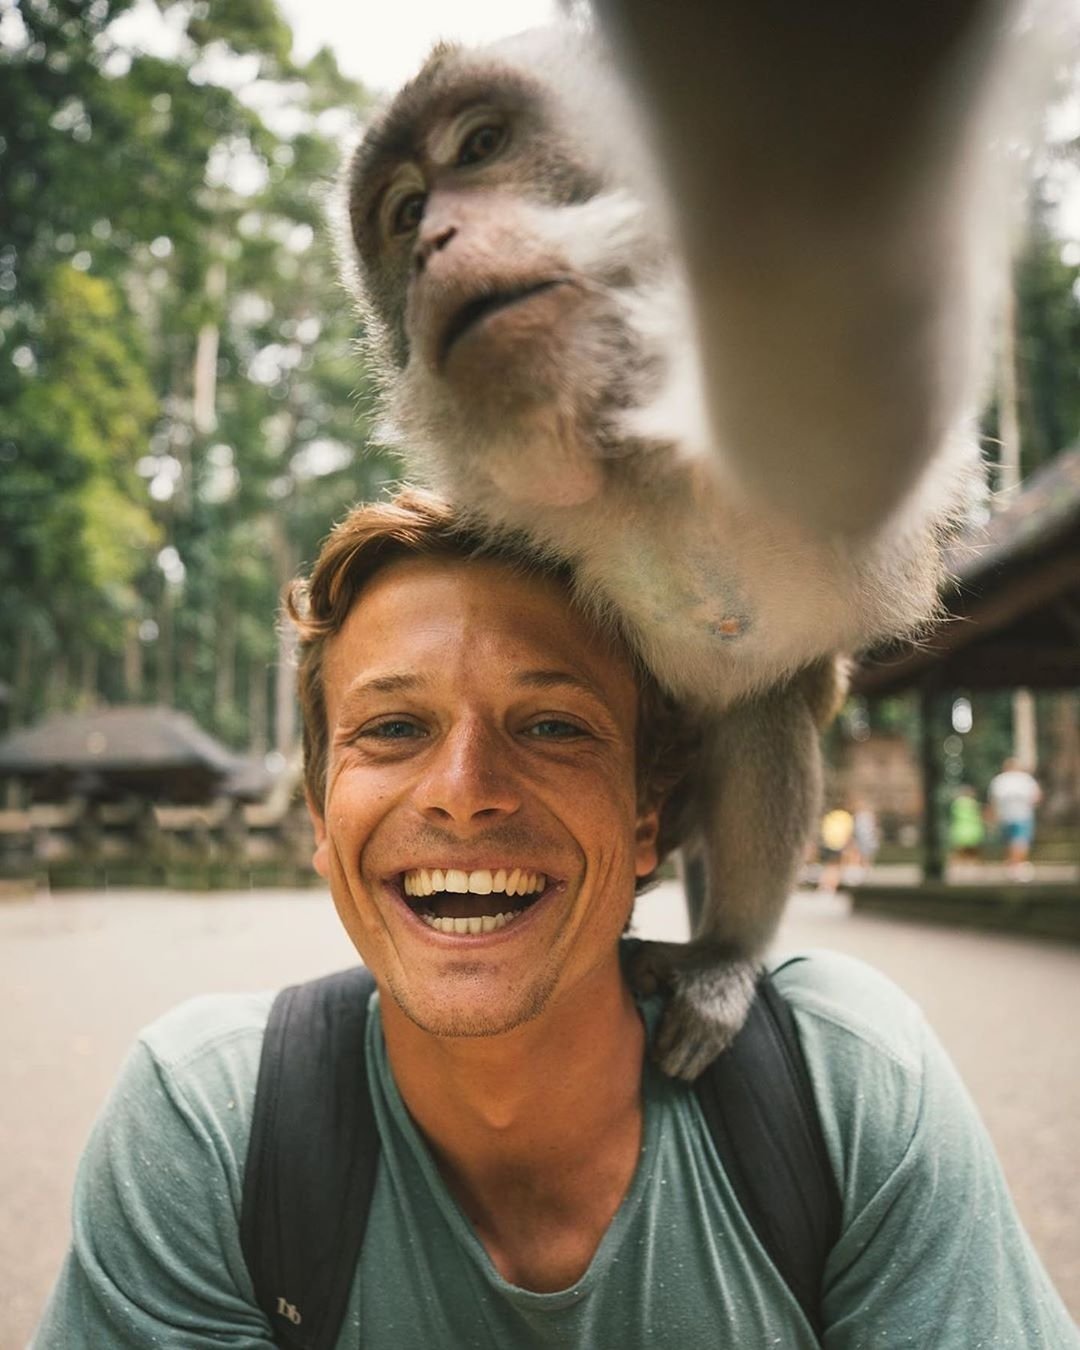 Trik Selfie Monyet di Bali